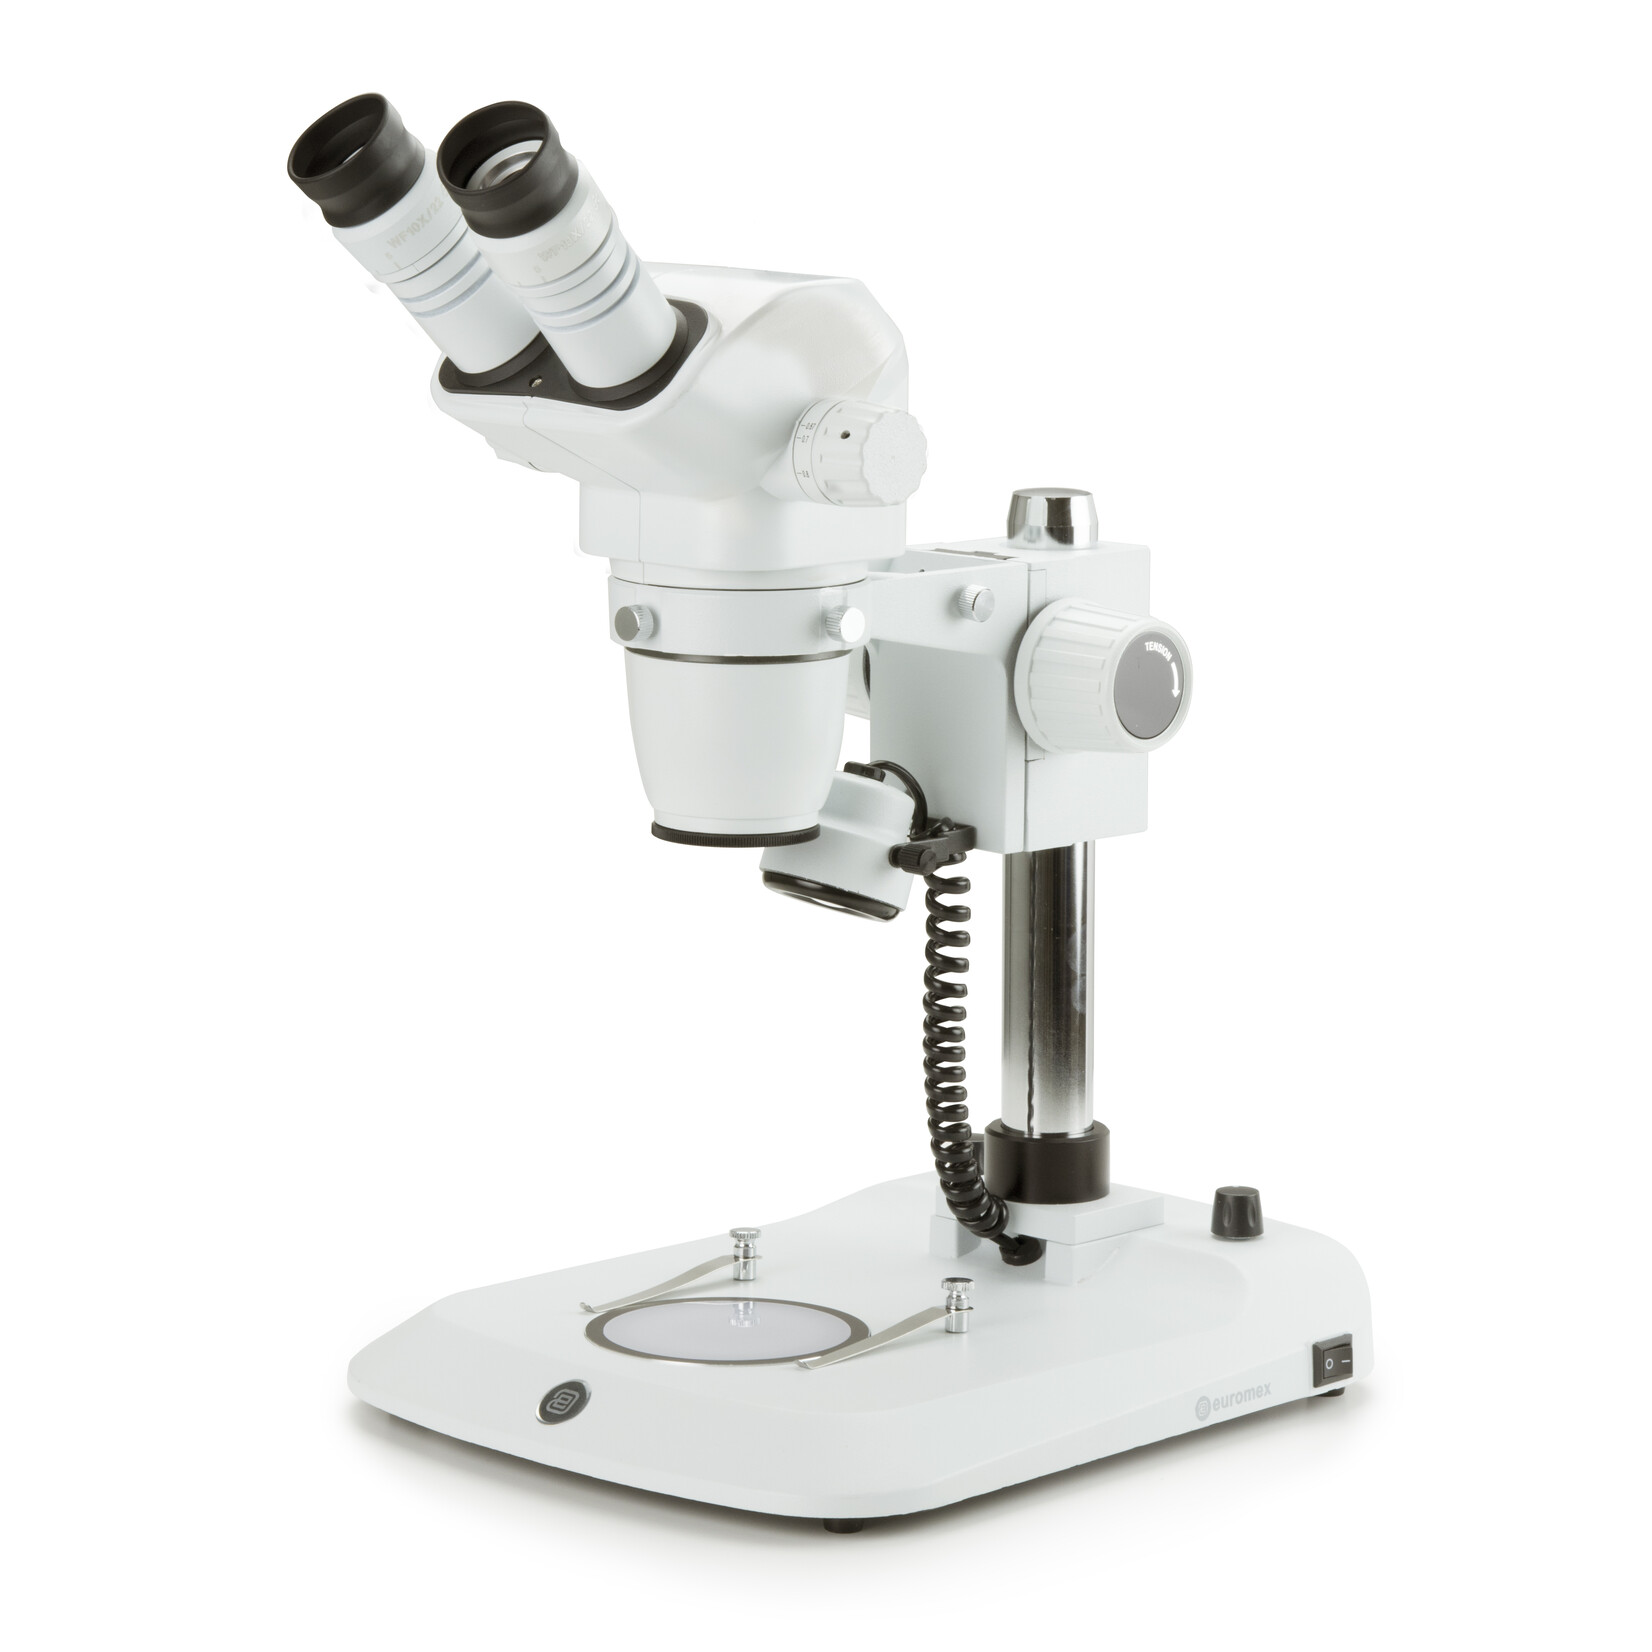 Microscopio binoculare stereo zoom NexiusZoom, obiettivo da 0,67x a 4,5x, ingrandimento da 6,7x a 45x con supporto a colonna